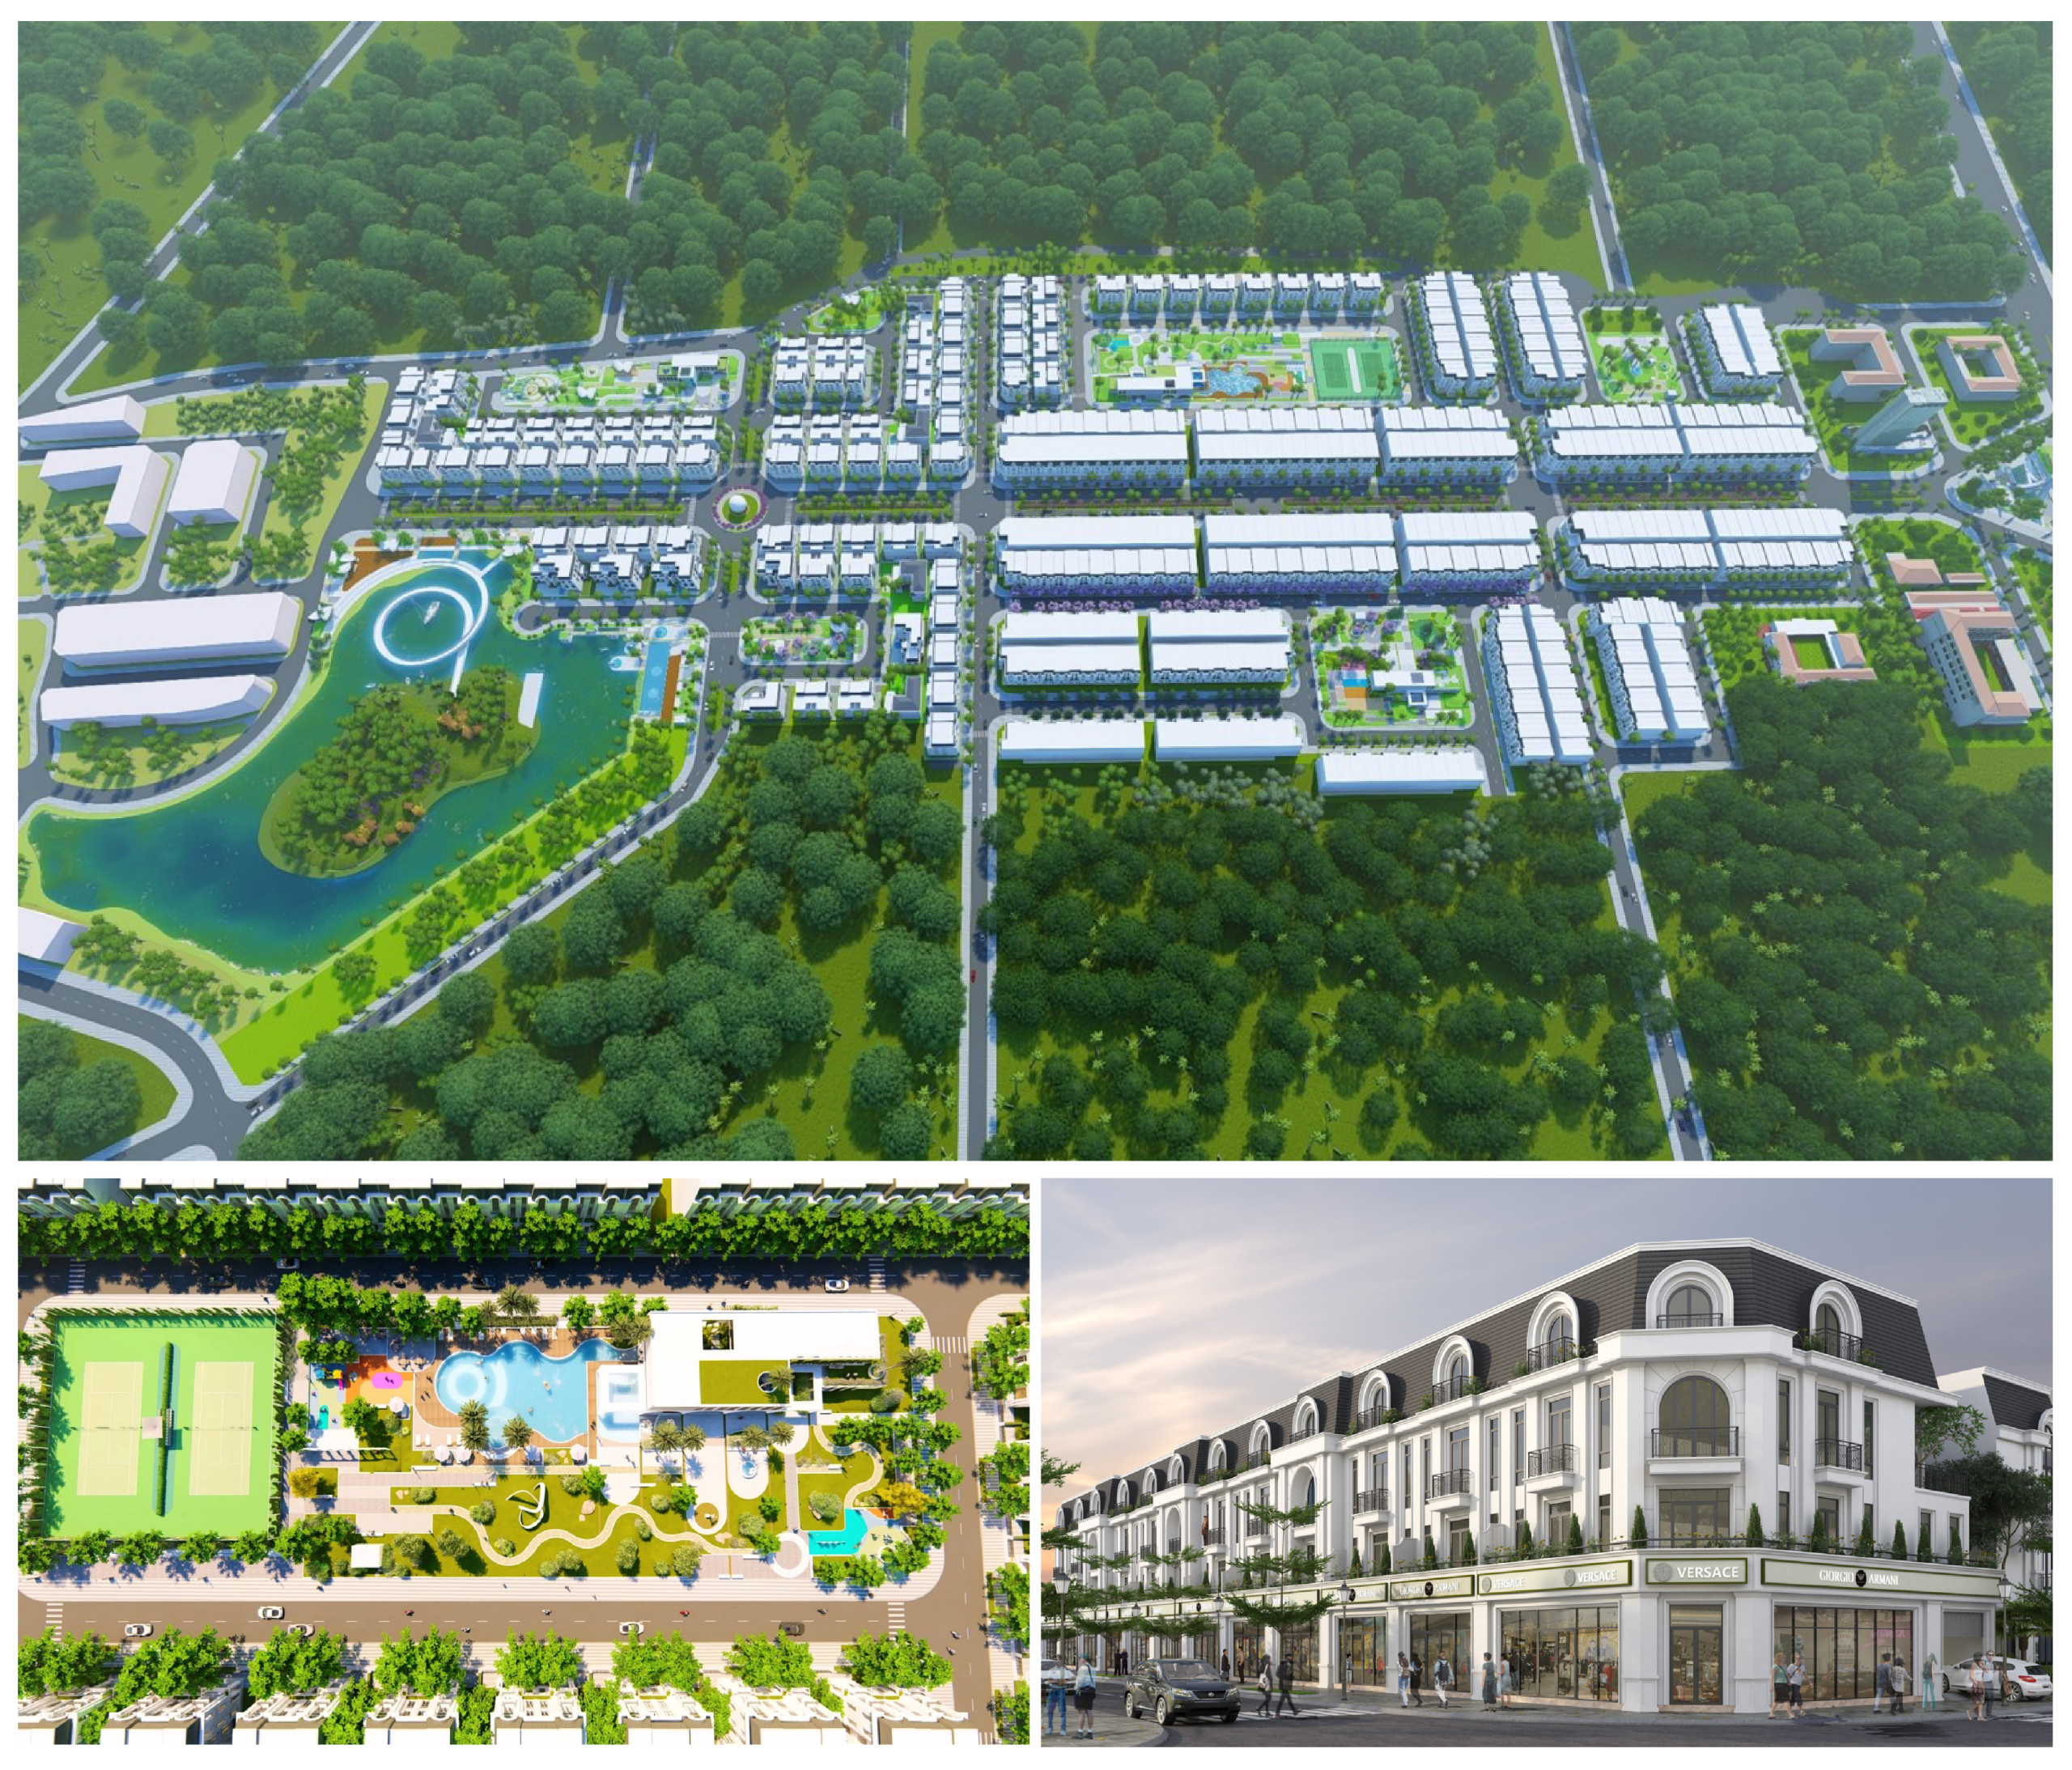 Dự án Crown Villas do chủ đầu tư uy tín Thái Hưng thực hiện đã nhanh chóng cho thấy sức hút trên thị trường bất động sản Thái Nguyên